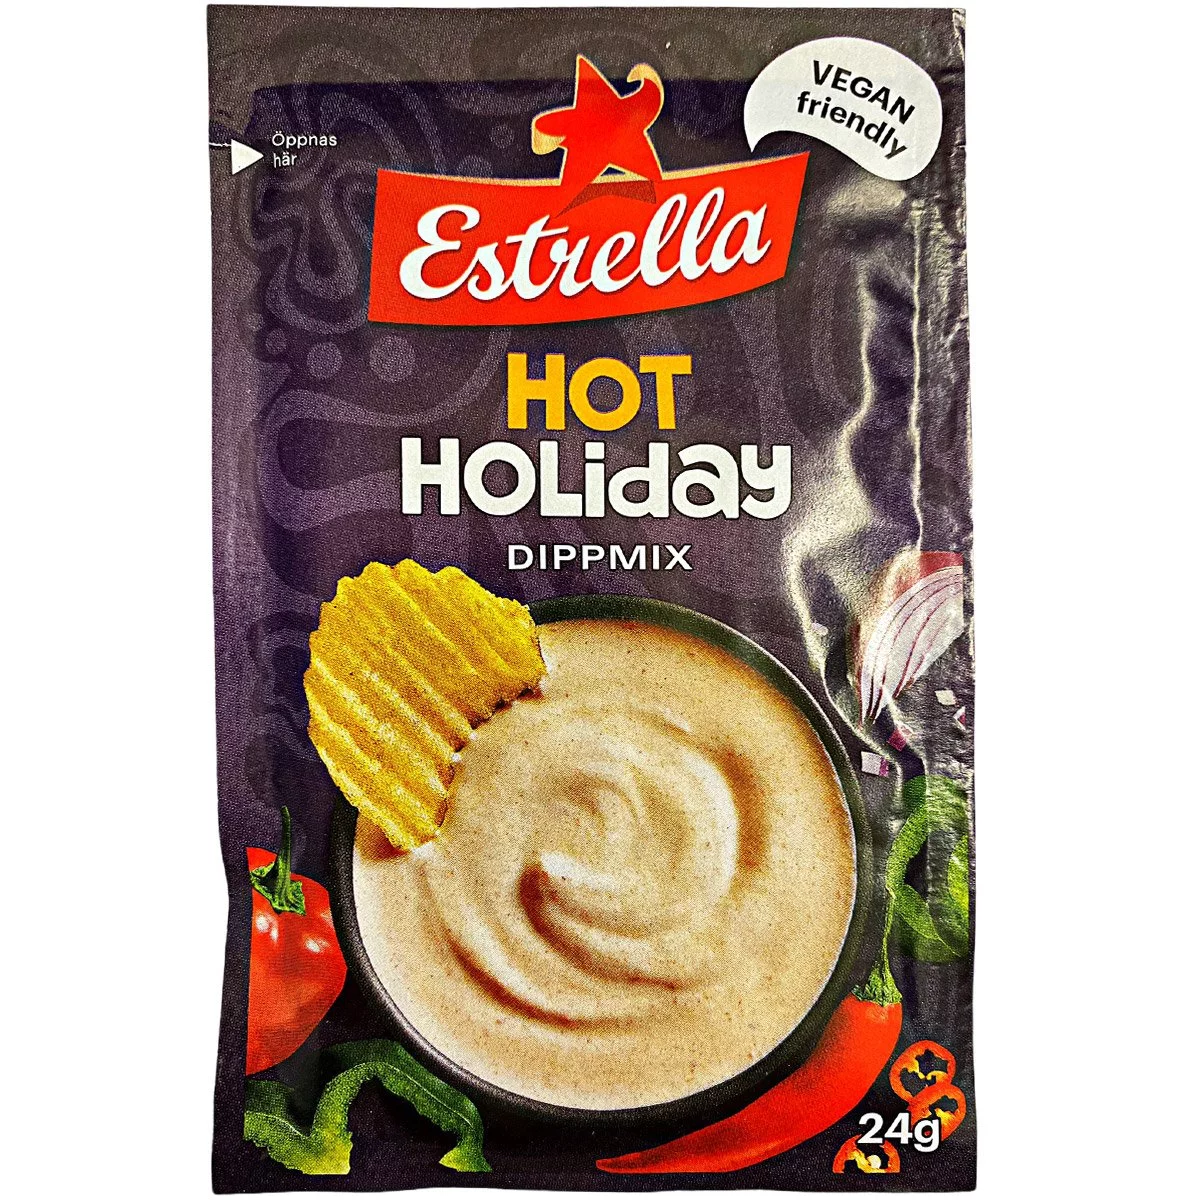 Estrella Hot Holiday Dipmix - (24g) *SONDERPREIS wegen abgelaufener Haltbarkeit* 1